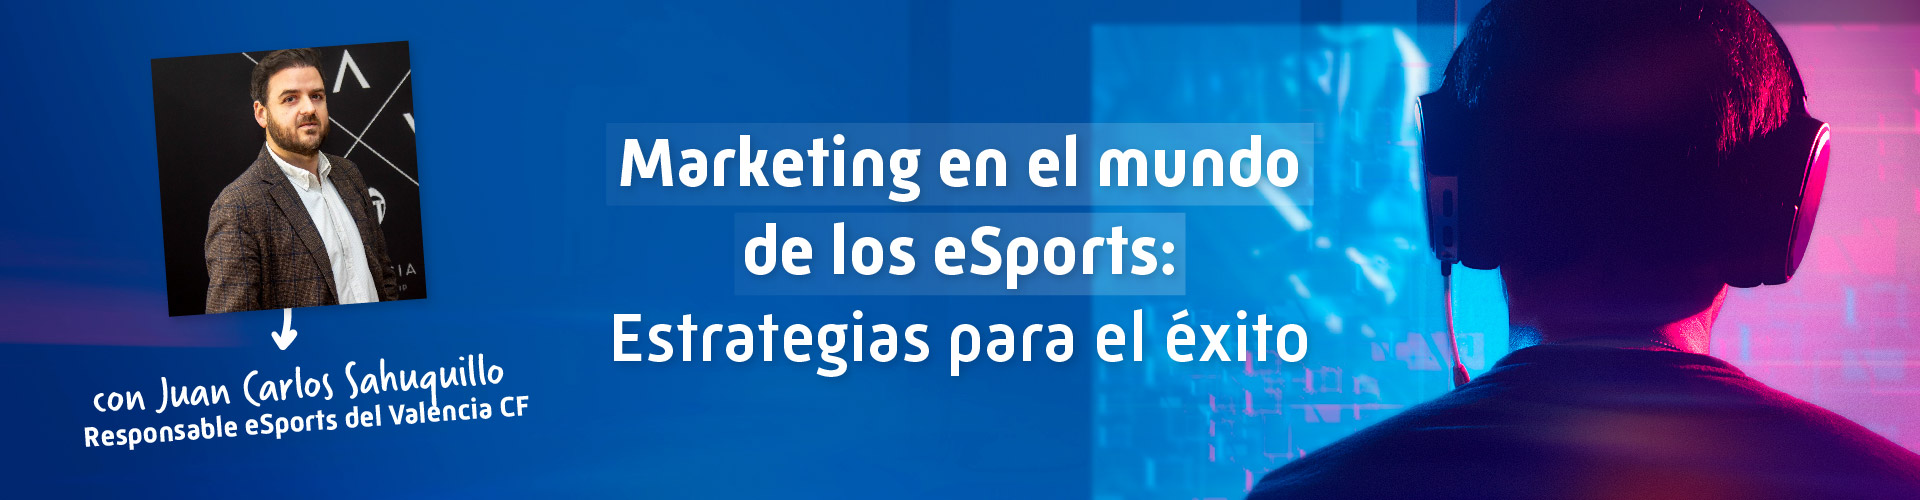 Marketing en el mundo de los eSports